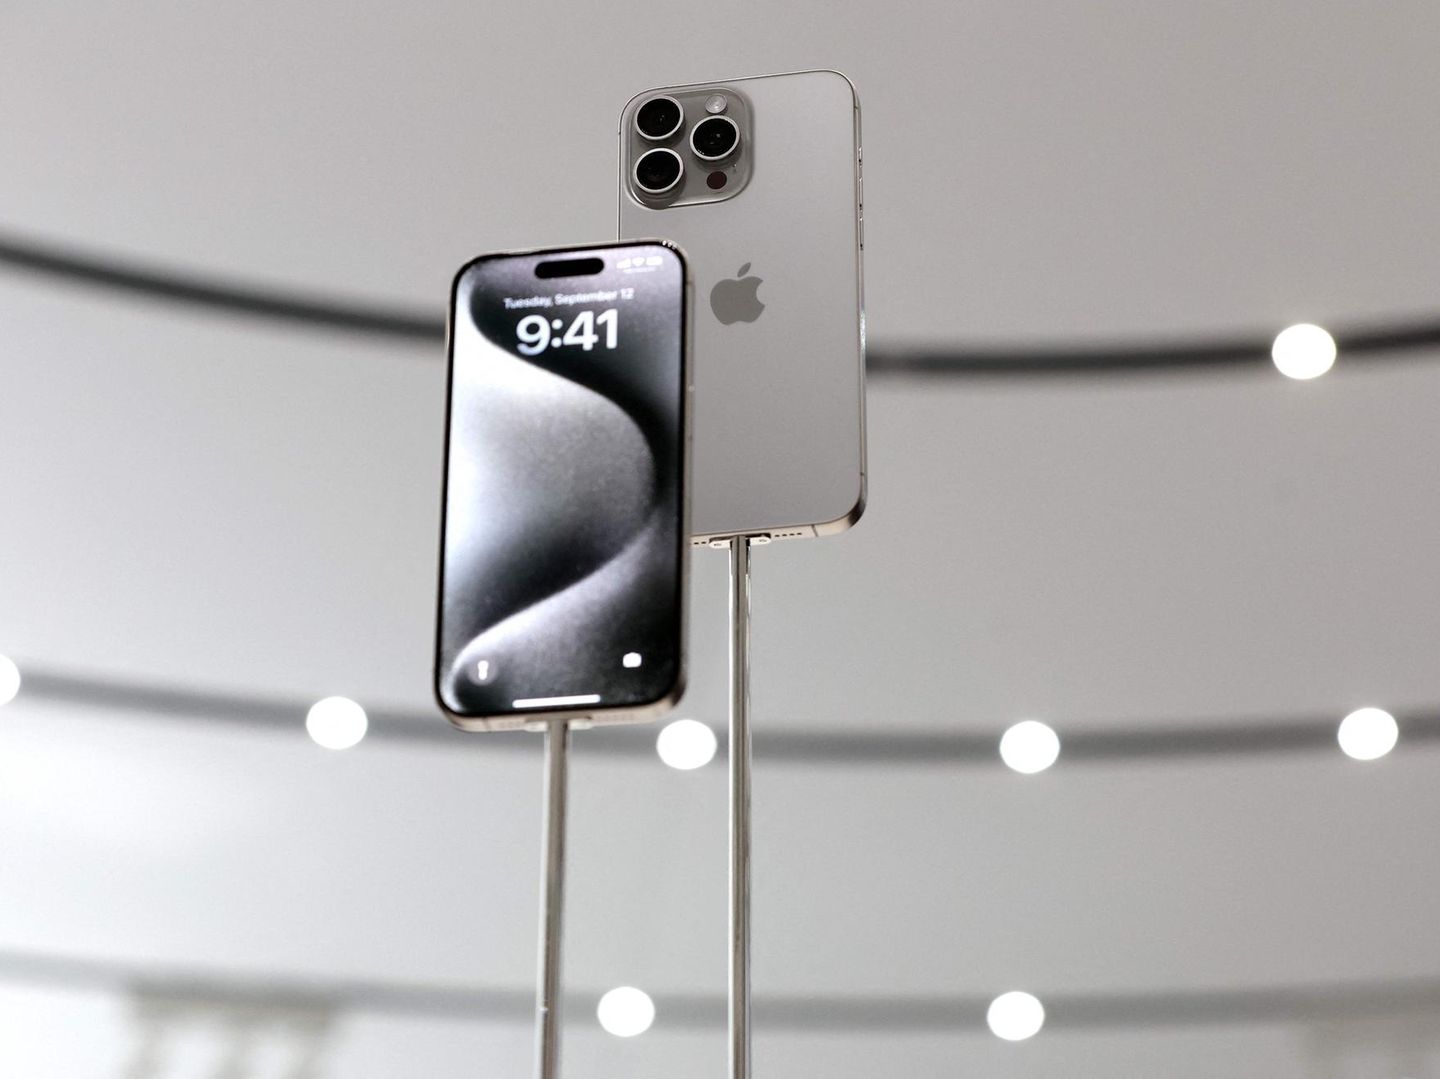 iPhone 14 (Pro) vorgestellt: Die neuen Apple-Handys im Detail